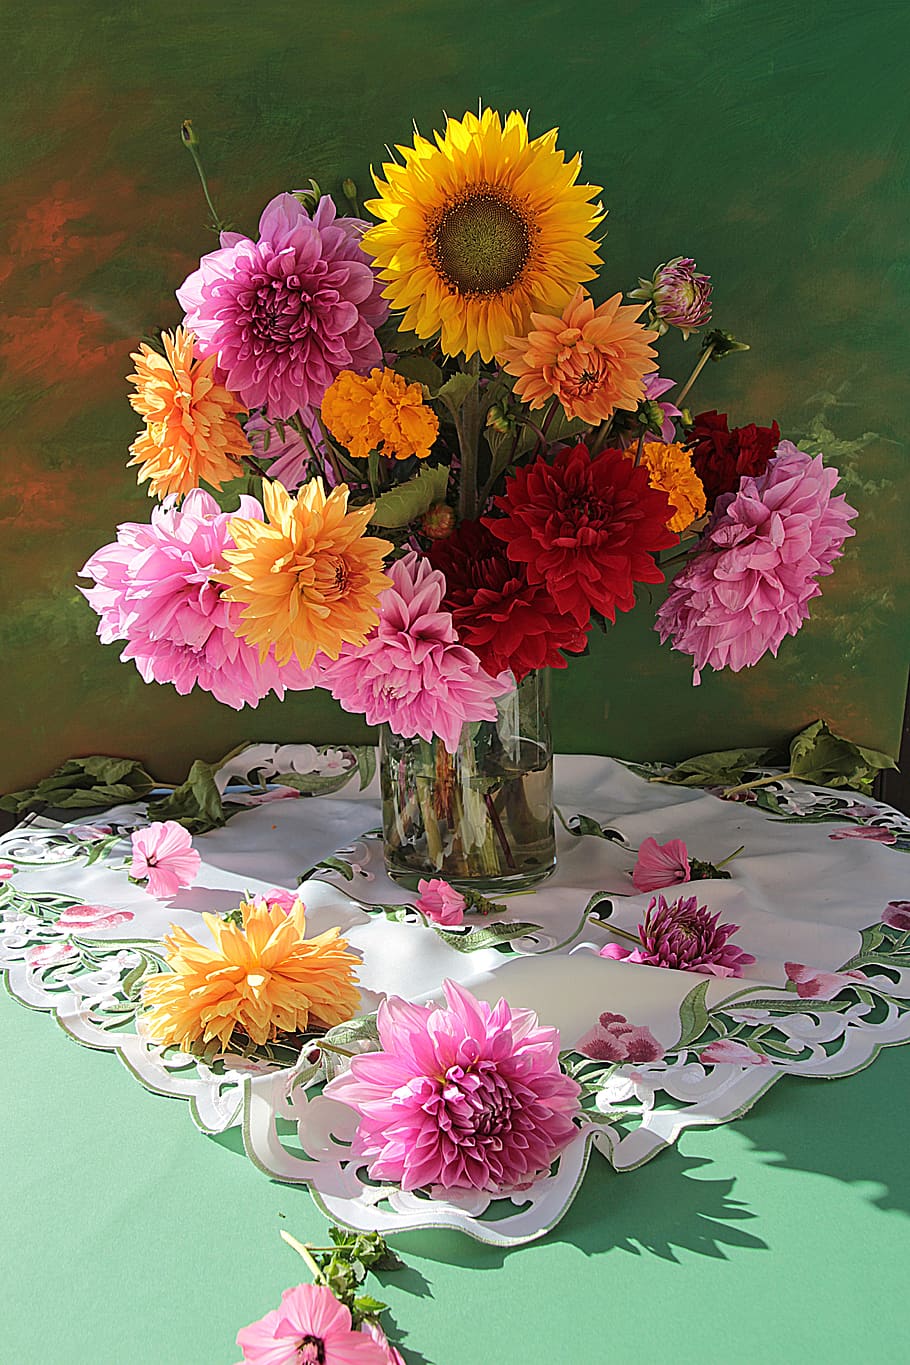 bunga, tanaman, alam, buket, warna, musim panas, vas bunga, taplak meja, dekoratif, warna-warni